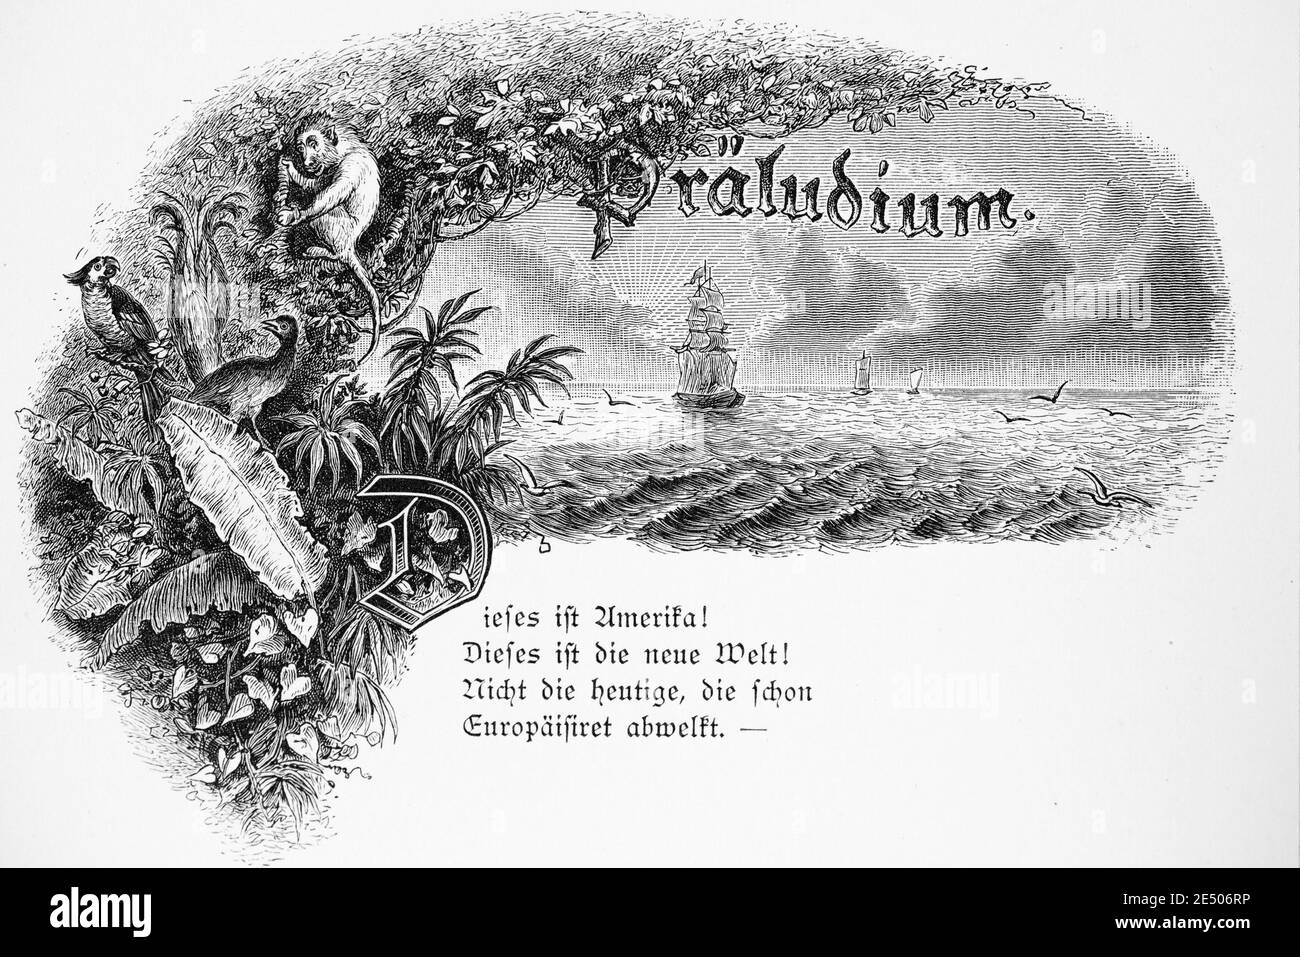 Ilustración de Heine´s poema 'Präludium' o Prelude sobre el nuevo mundo América, escritor y poeta alemán Heinrich Heine, colección de poemas Romancero,1880 Foto de stock